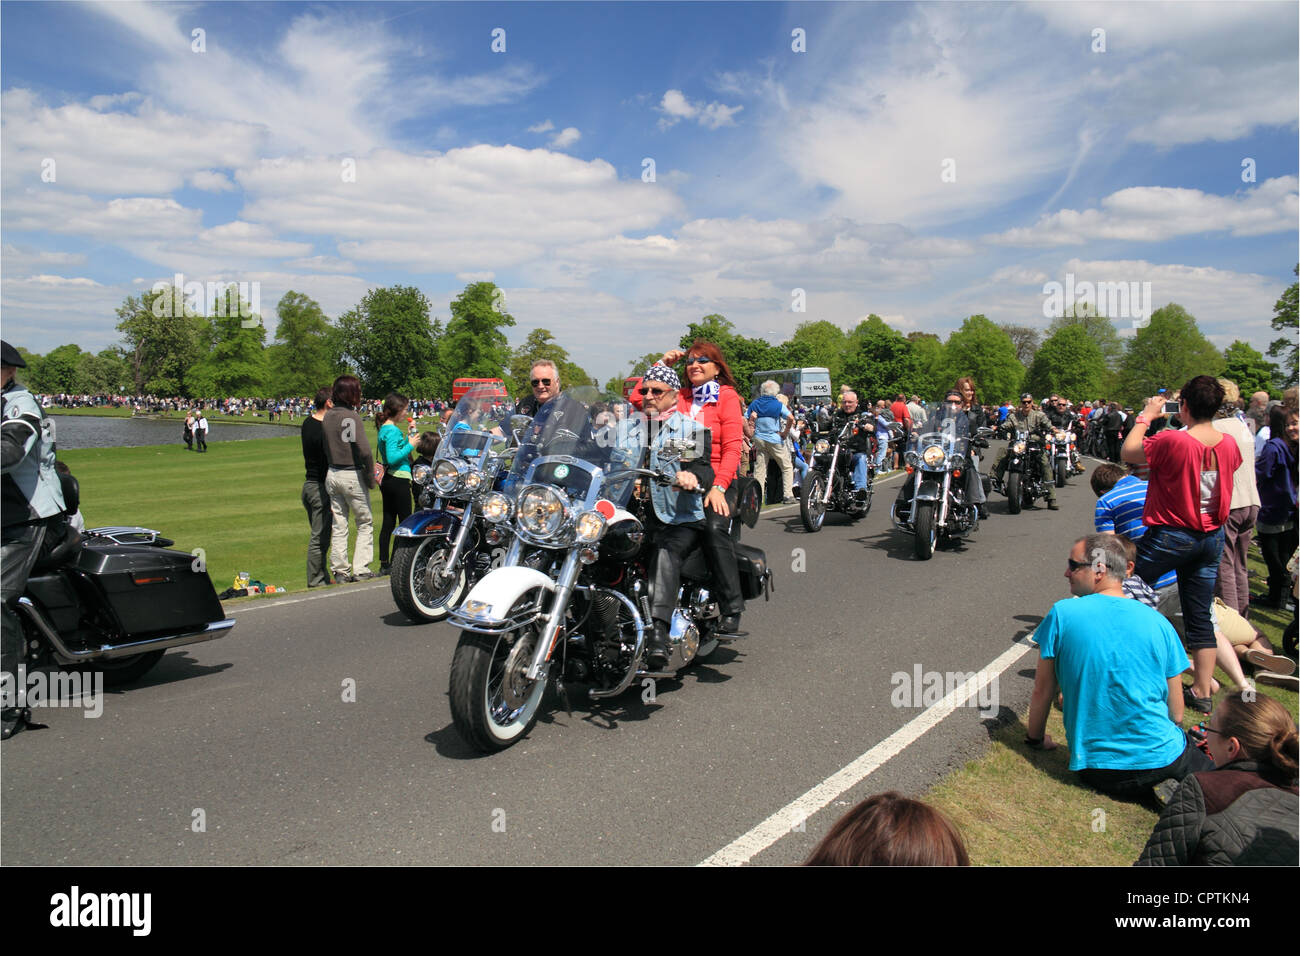 Motos Harley-Davidson, défilé de véhicules anciens, de Châtaigne dimanche, Bushy Park, Hampton Court, Angleterre, Royaume-Uni, Europe Banque D'Images